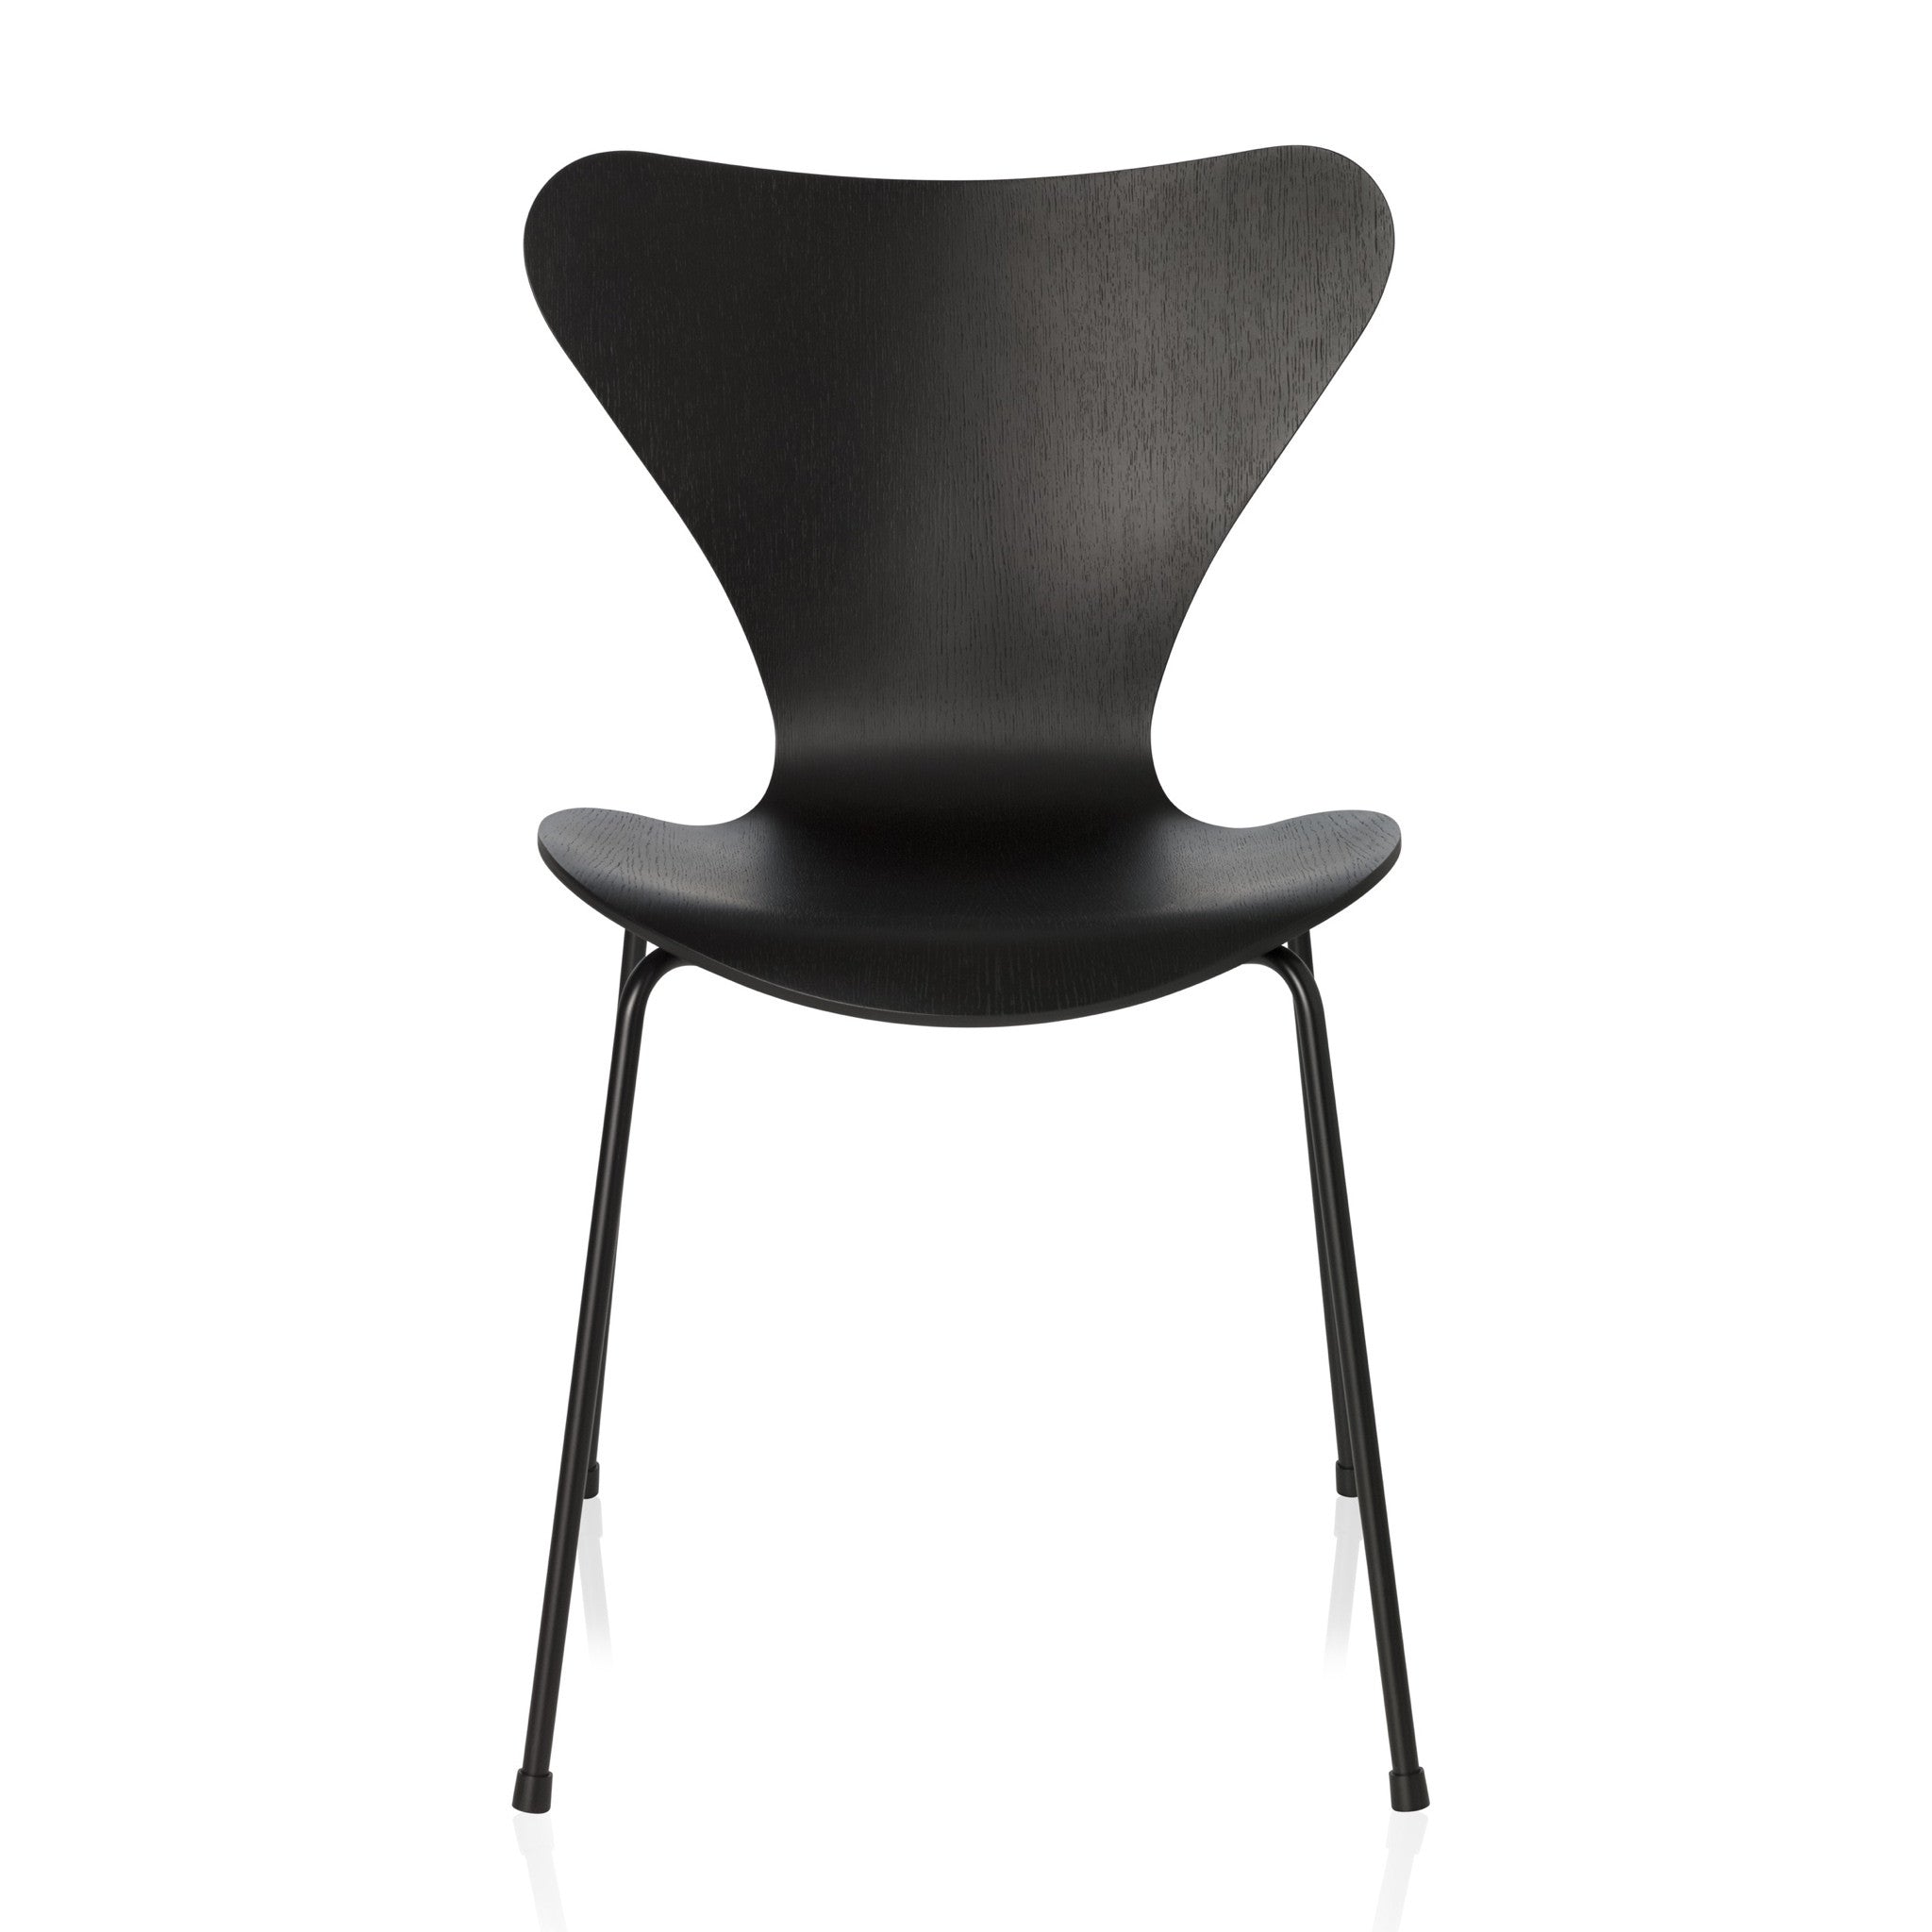 Series 7 Chair Monochrome by Fritz Hansen